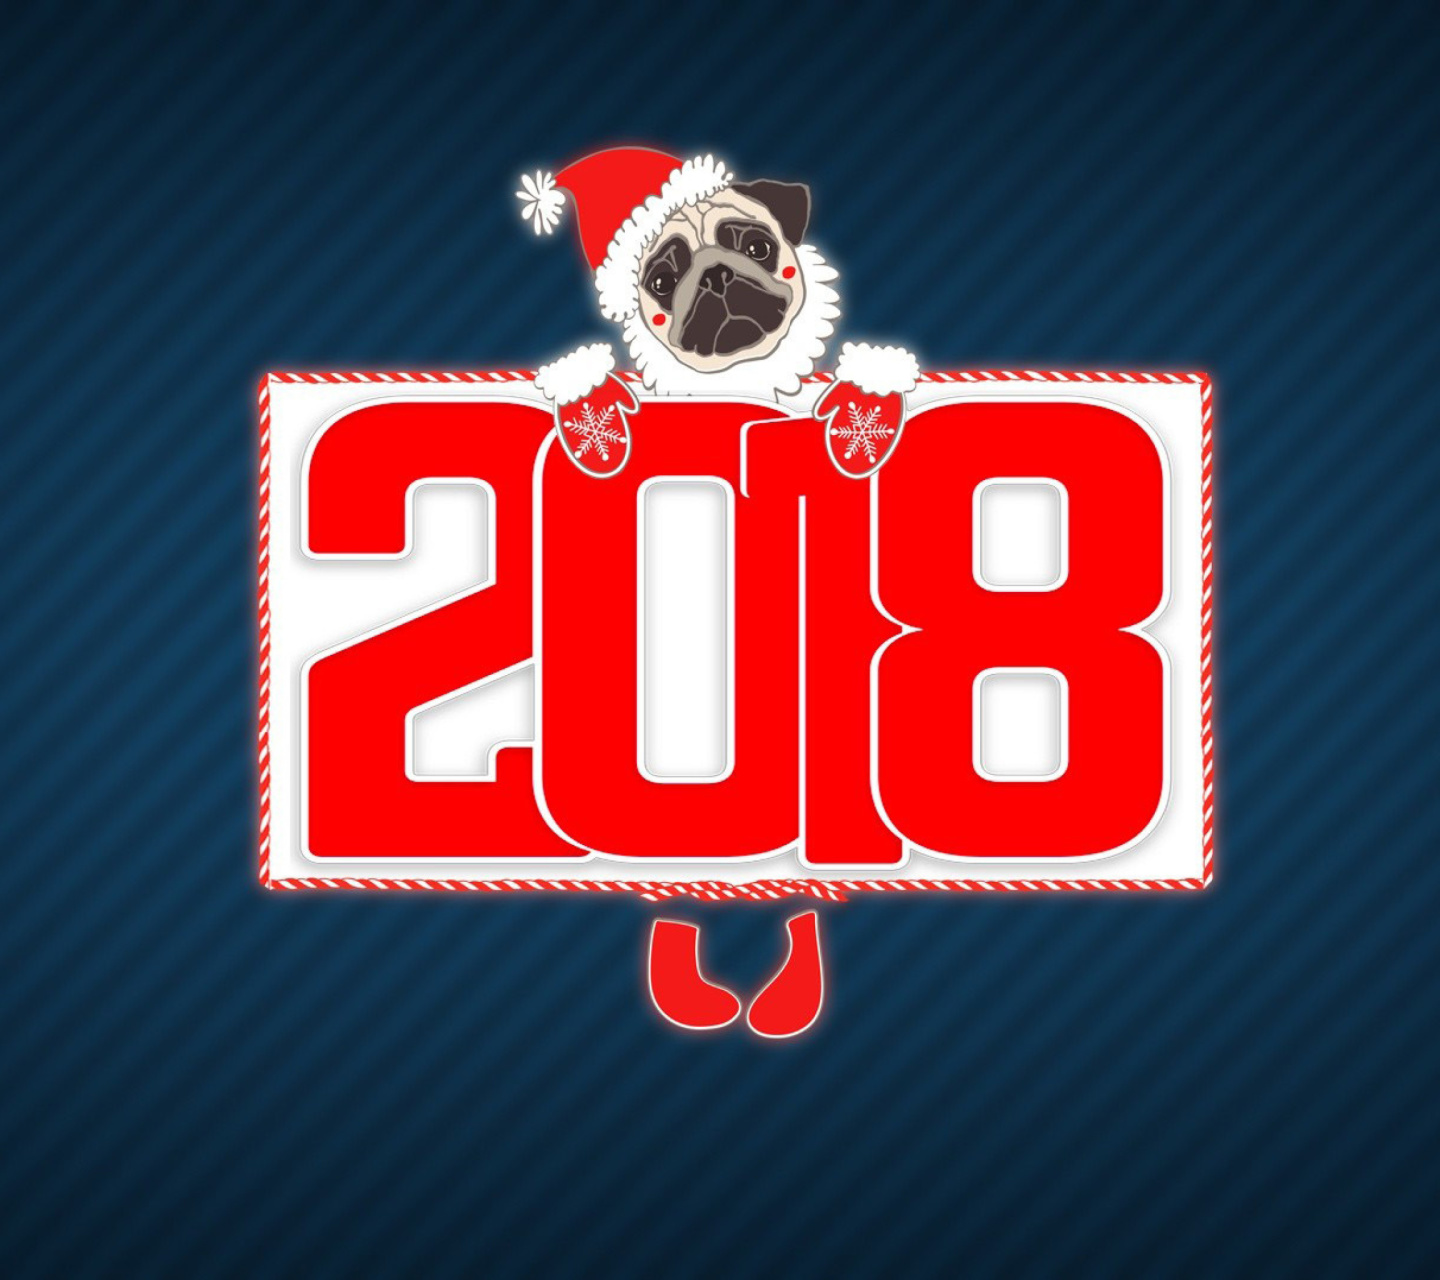 2018 New Year Chinese horoscope year of the Dog screenshot #1 1440x1280